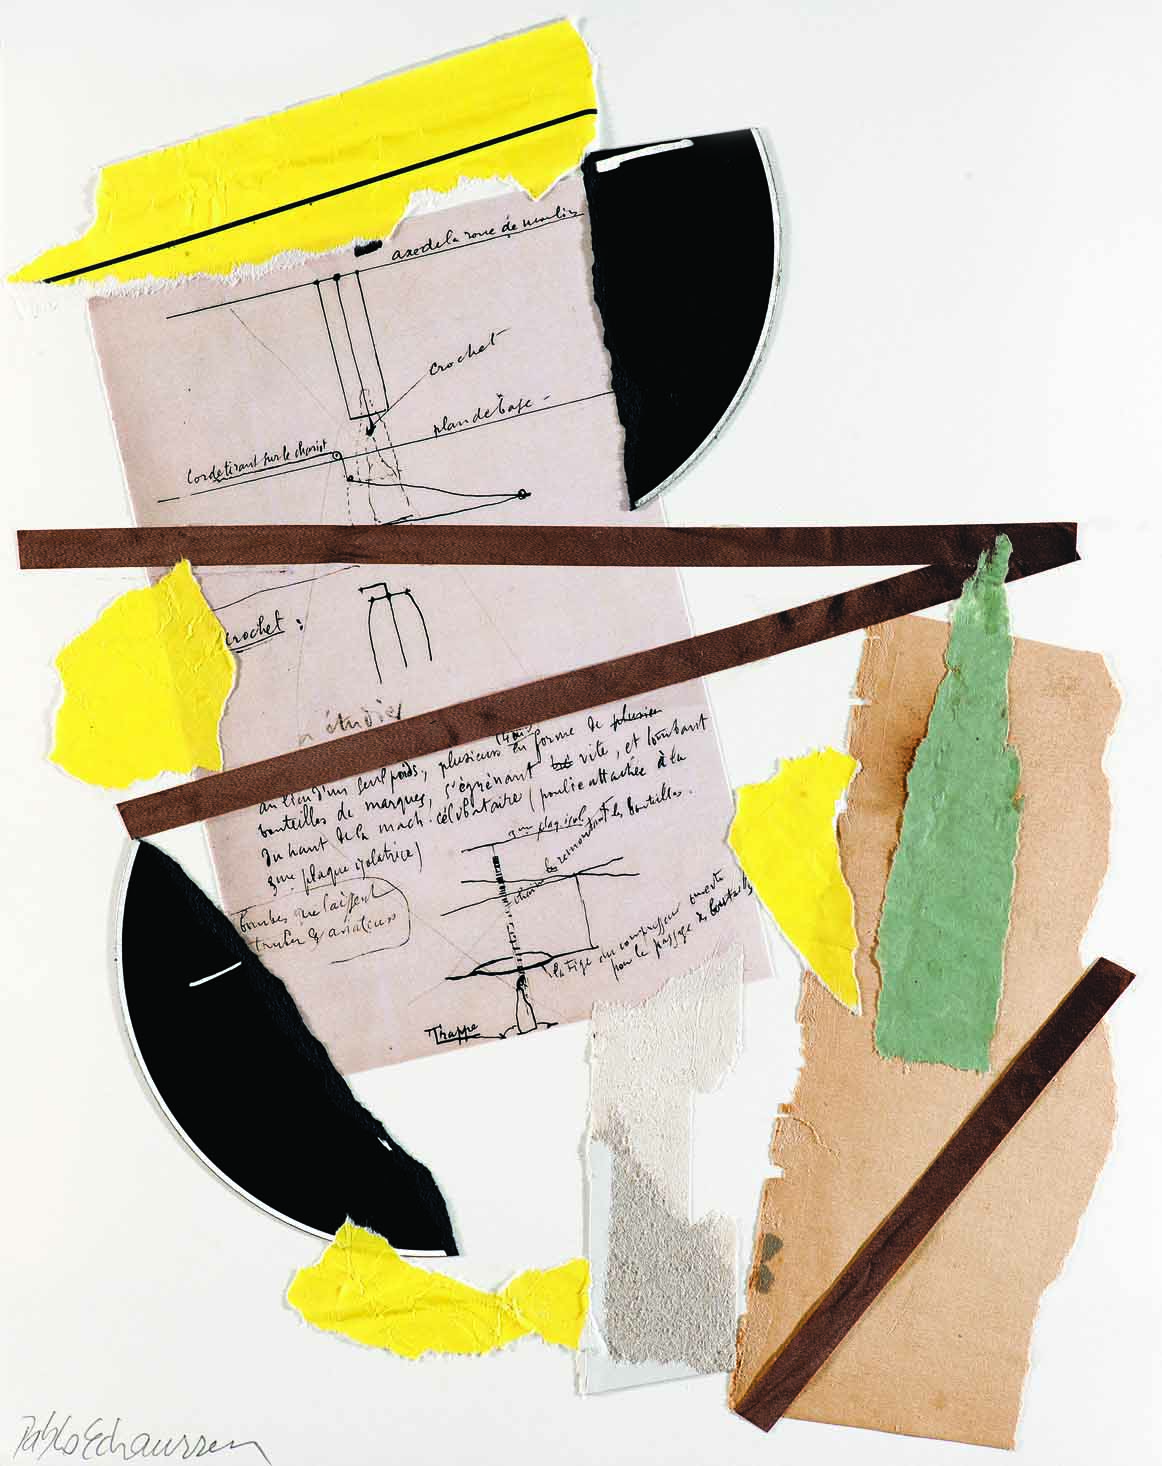 Pablo Echaurren, Incontro fortuito in una scatola verde, 2016, collage, 35,5 x 28 cm